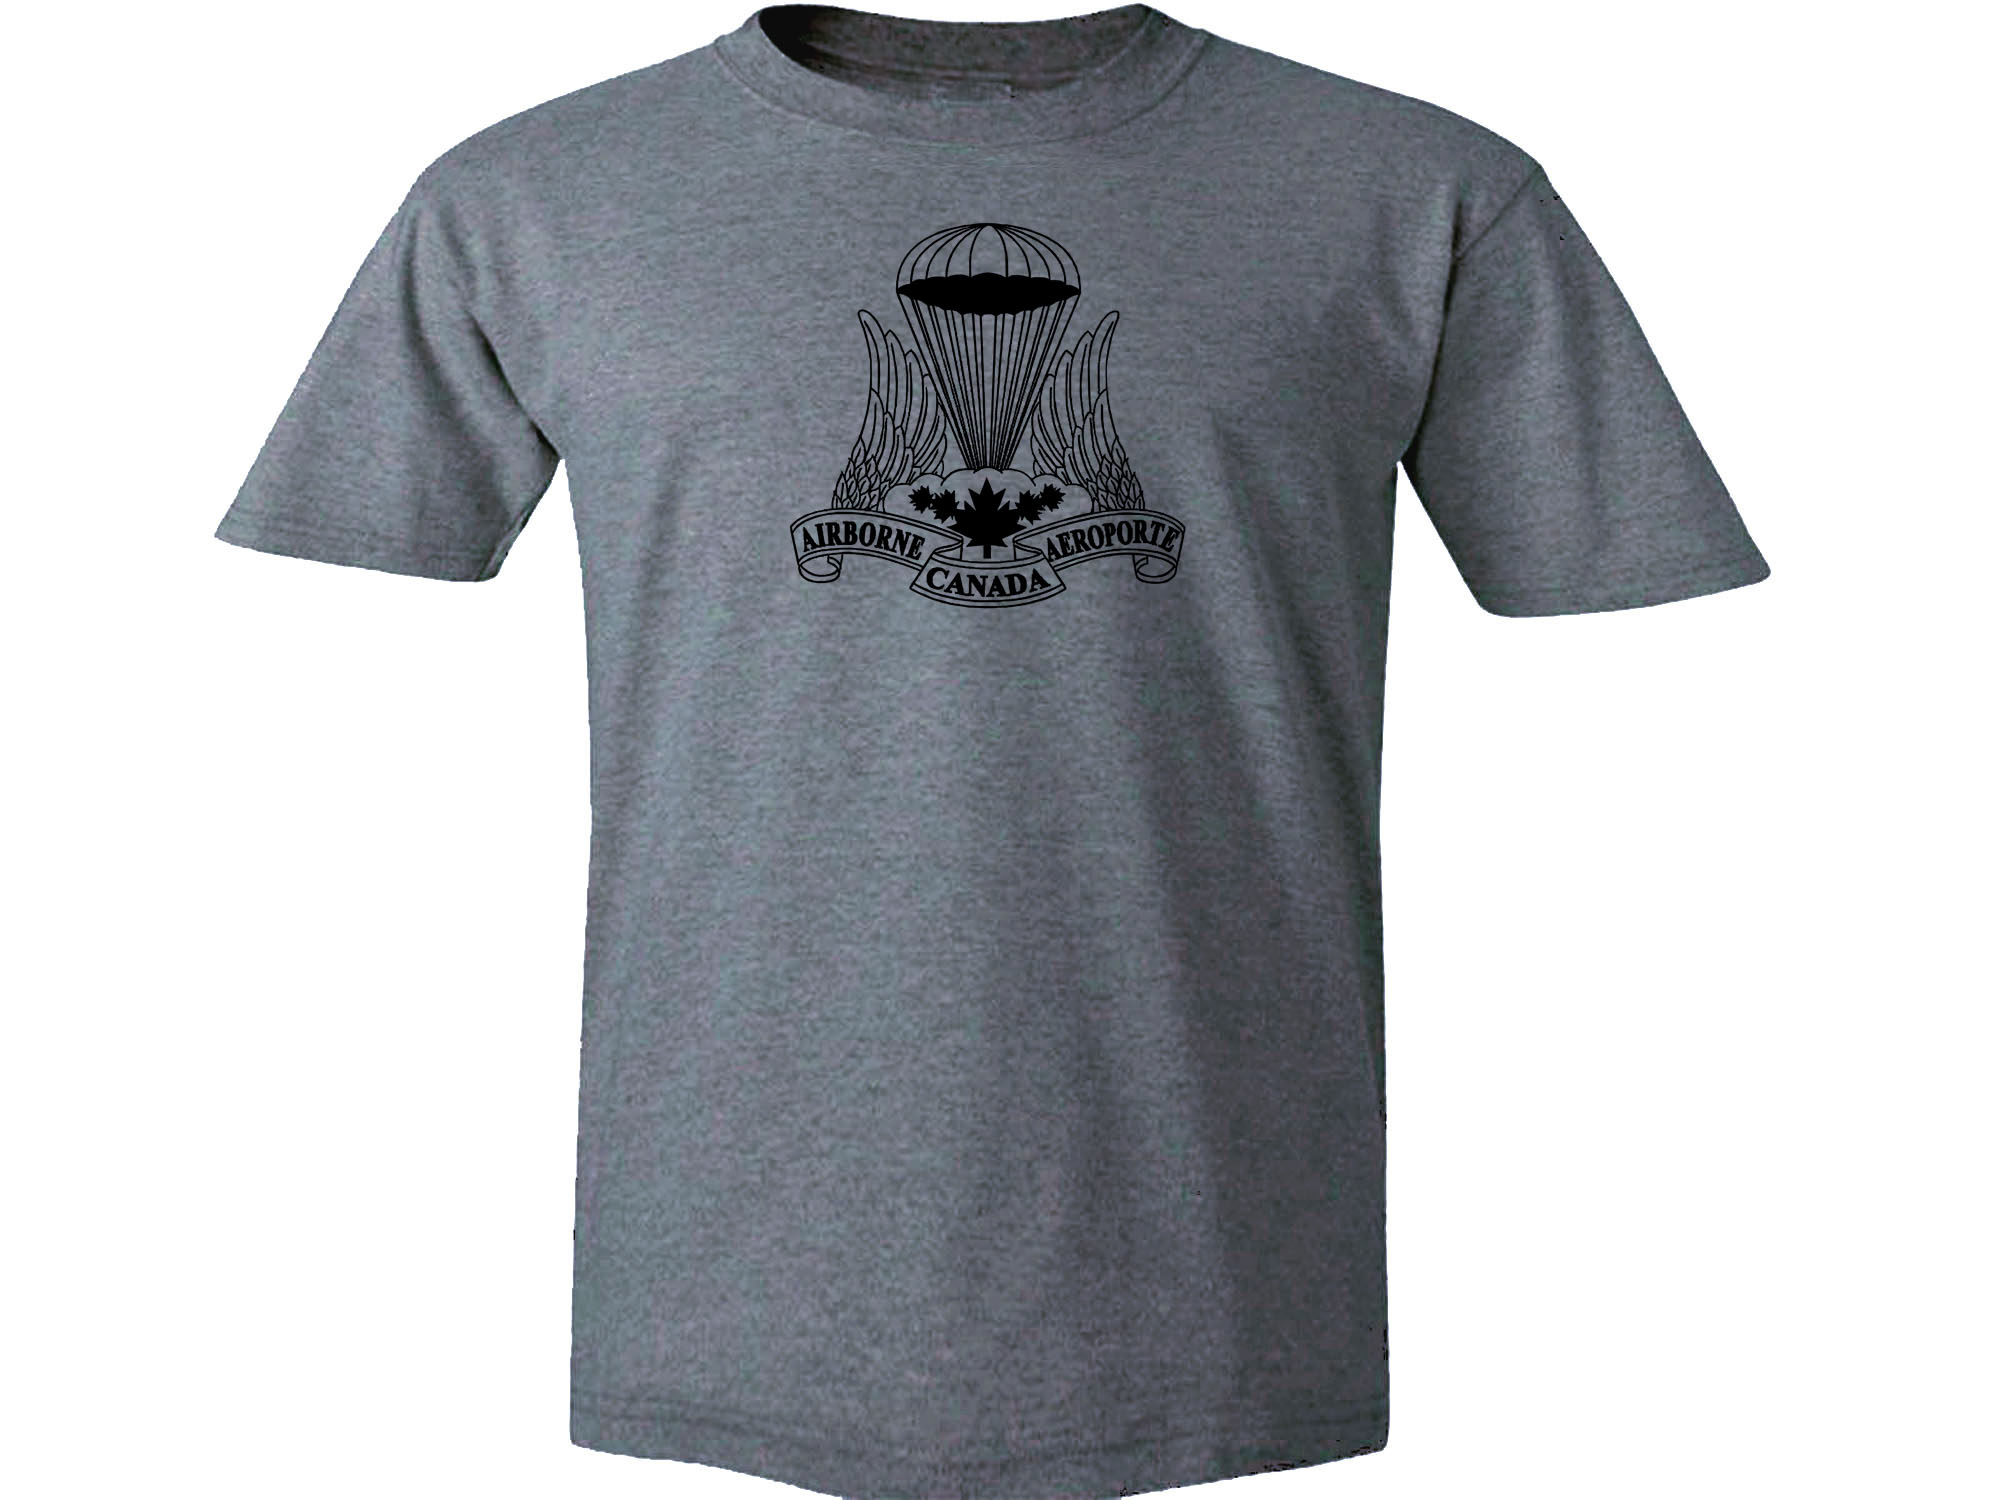 Canadian Airborne Regiment retro symbol gray t-shirt 2